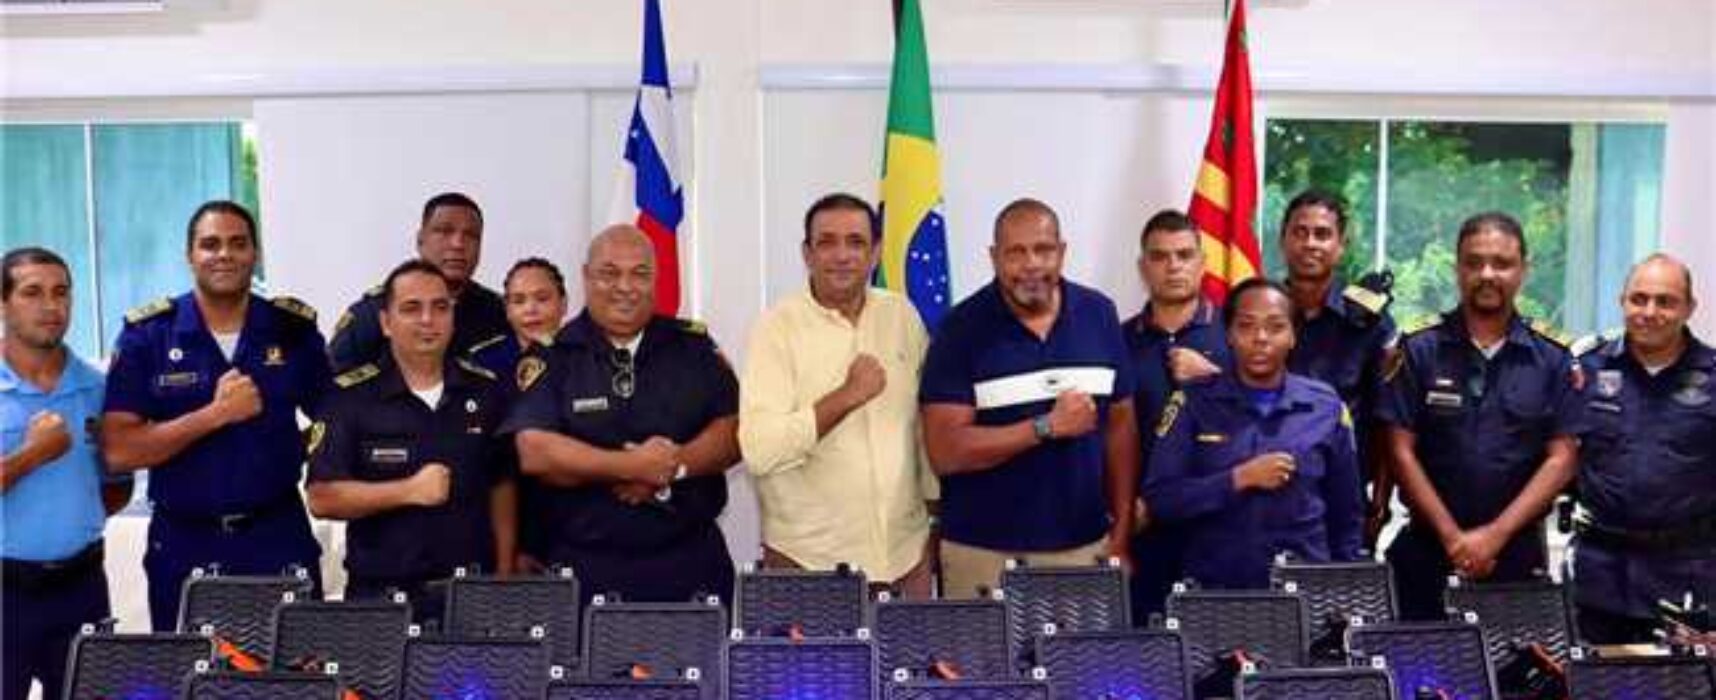 Segurança Pública em Pauta: novos armamentos não letais são adquiridos